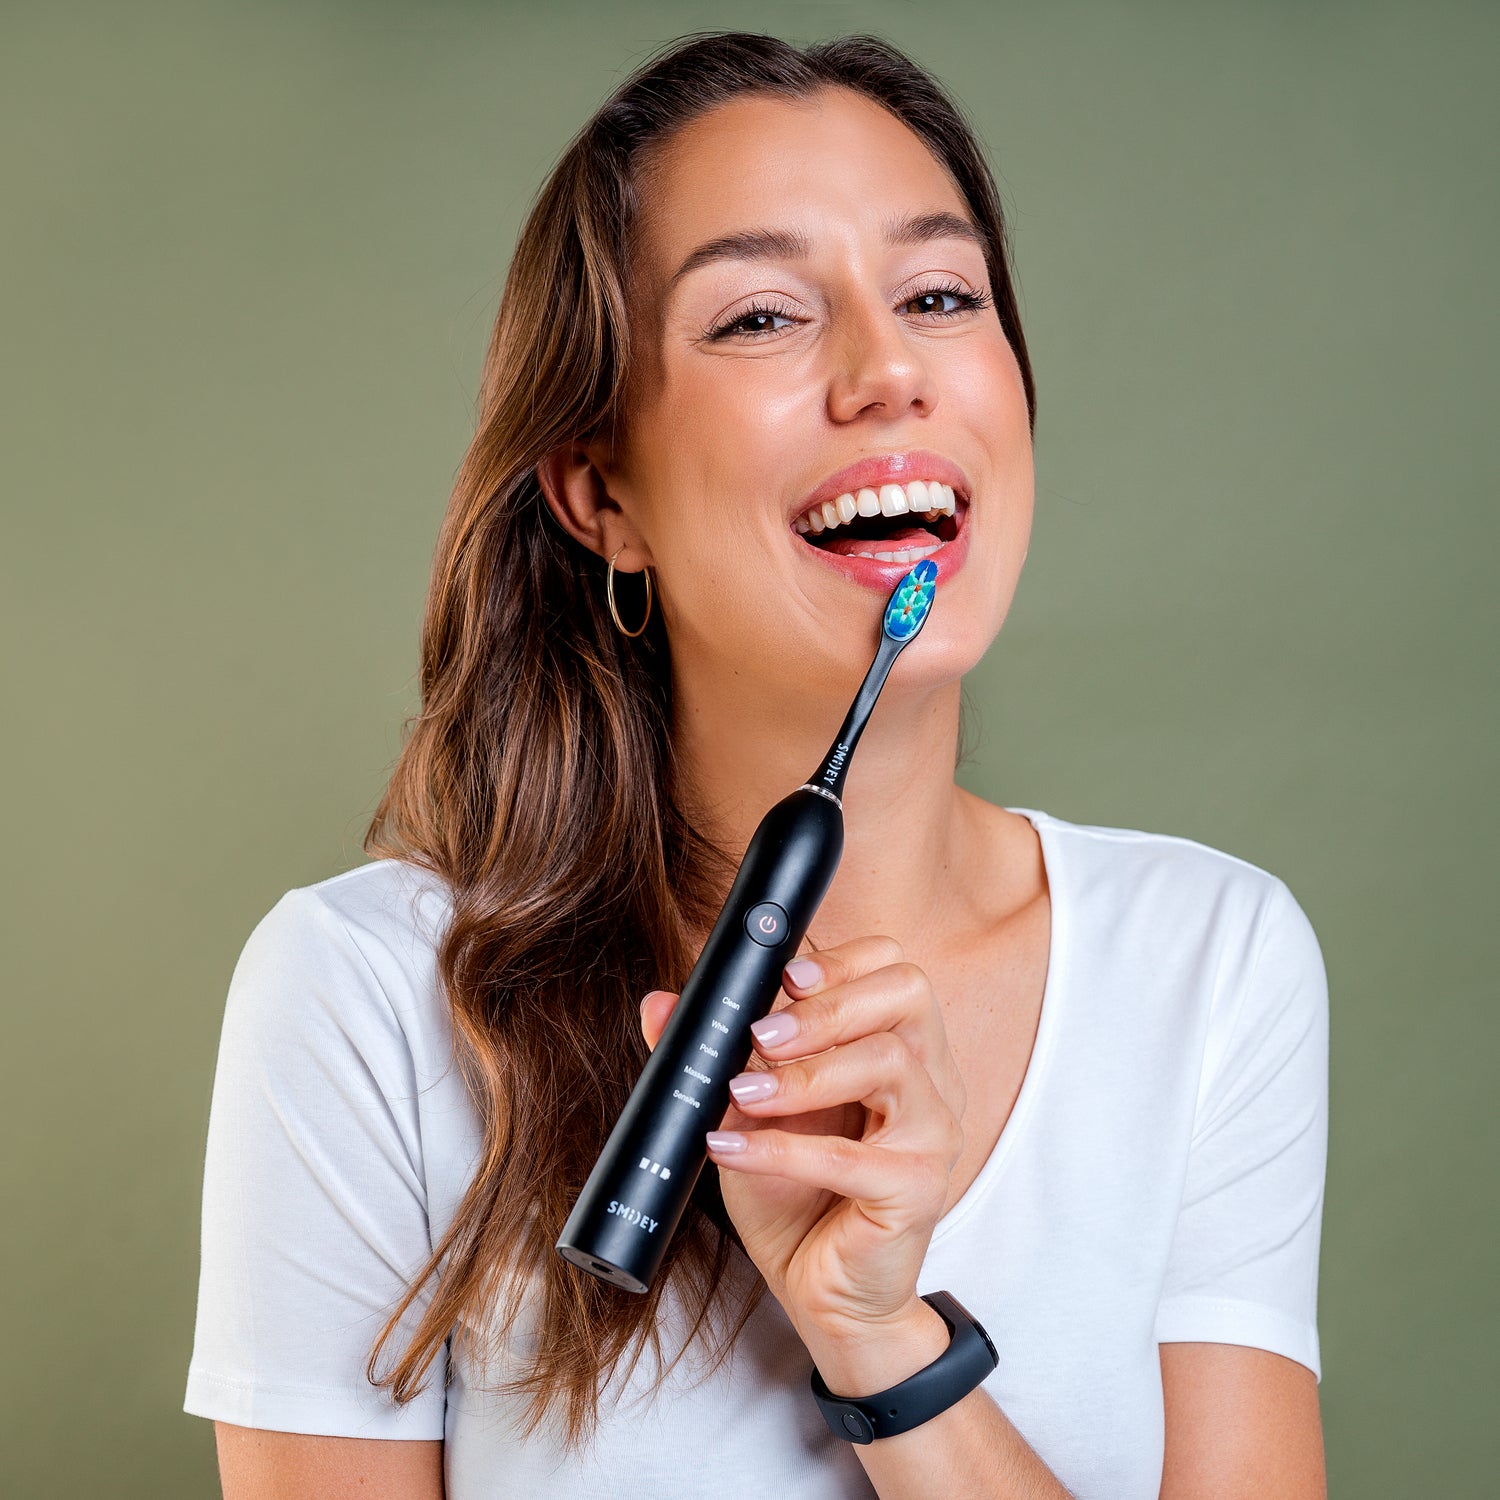 Электрическая зубная щетка Smiley Pro Black купить электро зубную щетку купить электрическую зубную щетку купить зубную электрощетку купить зубную щетку электрическую купити електричну зубну щітку електрична зубна щітка купити